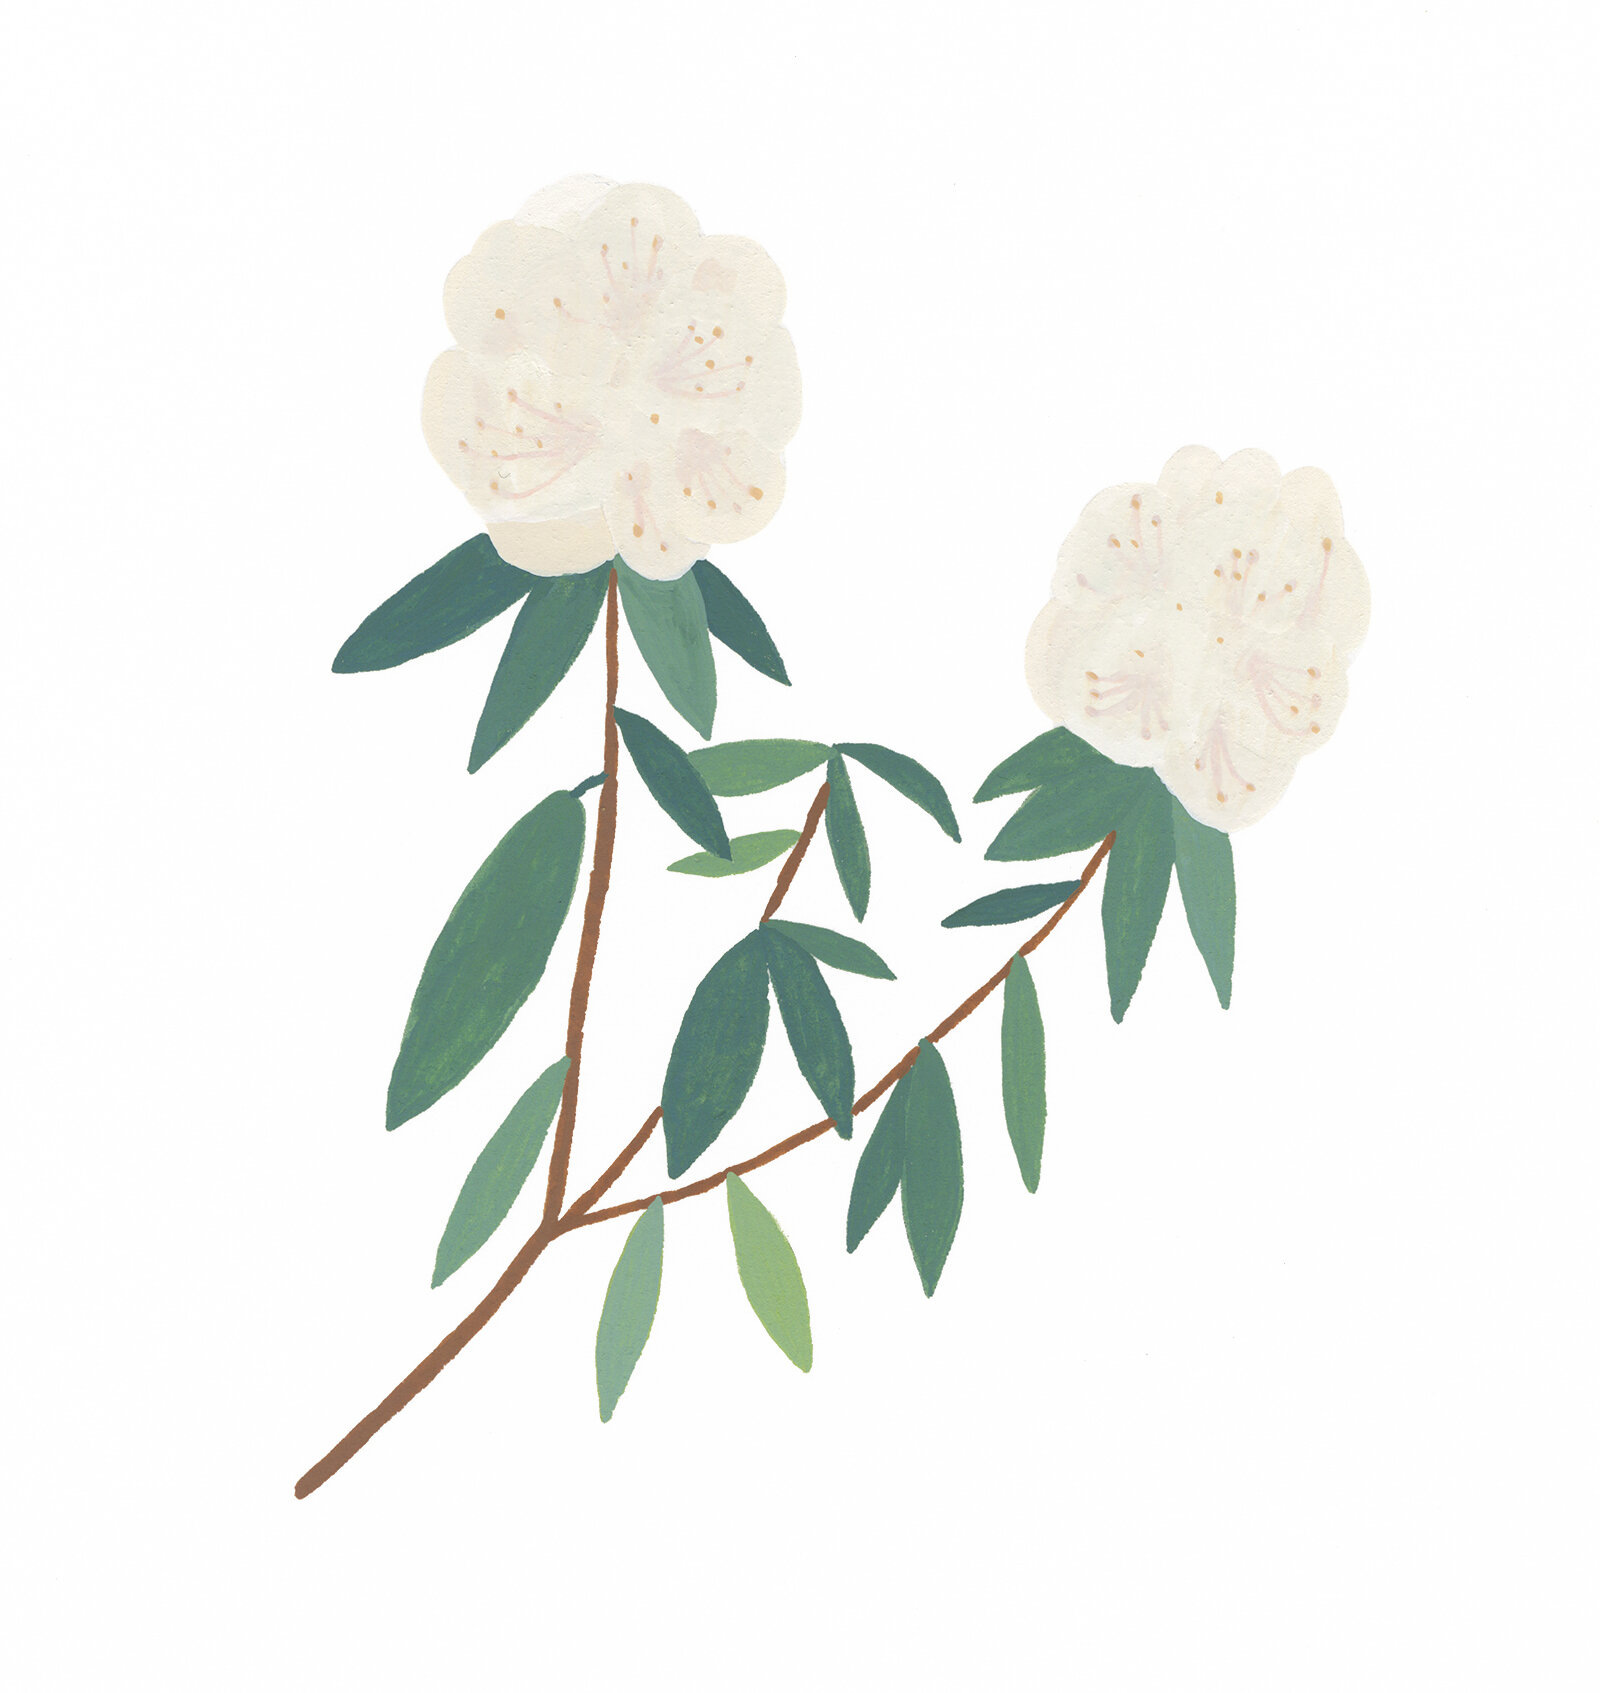 Rhododendron-Crop.jpg